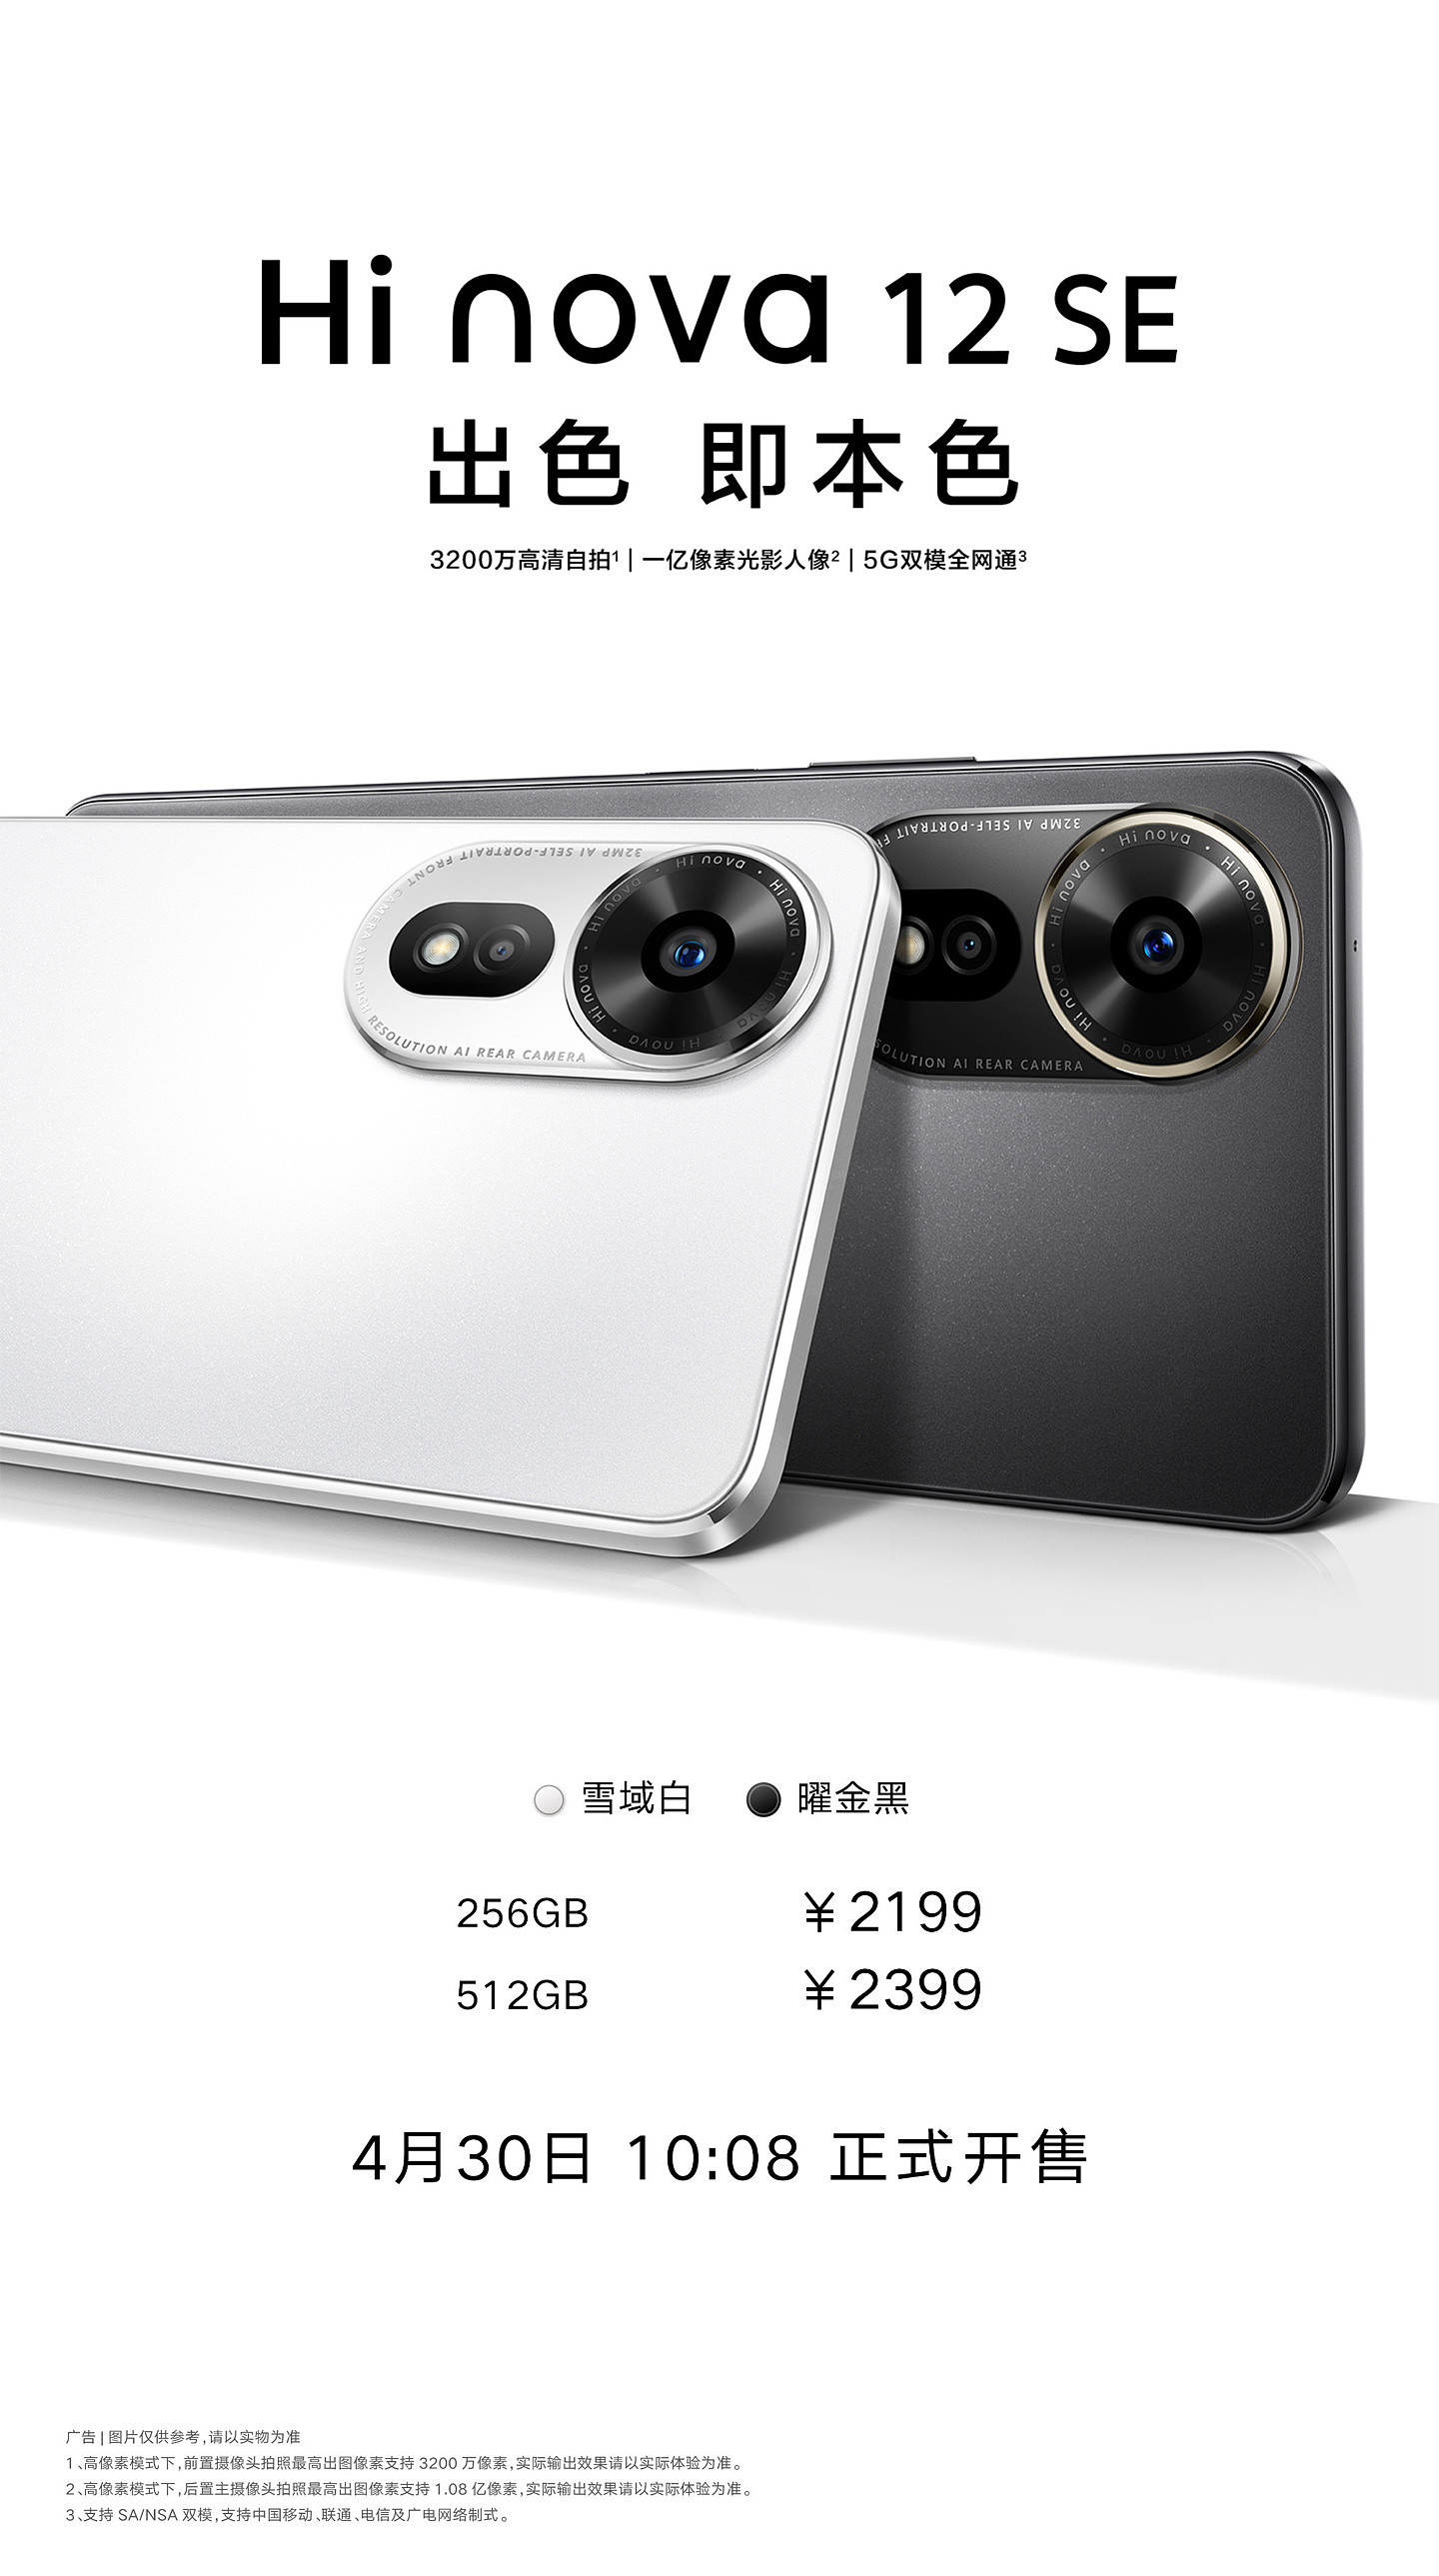 中邮通信 Hi nova 12 SE 手机现已开售，2199 元起 - 1